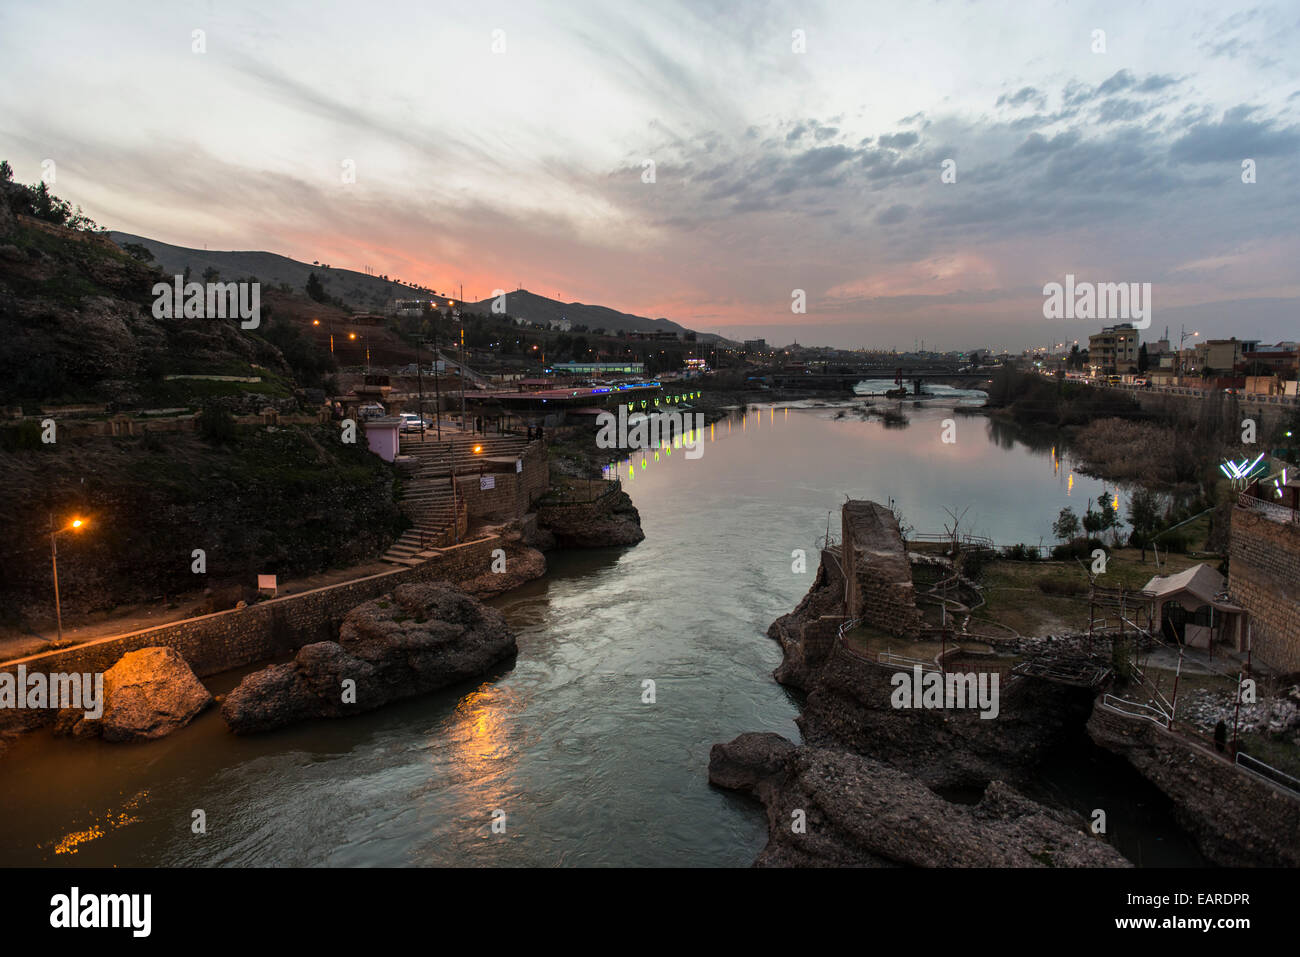 Khabur River, Zakho, Dohuk Province, Iraqi Kurdistan, Iraq Stock Photo